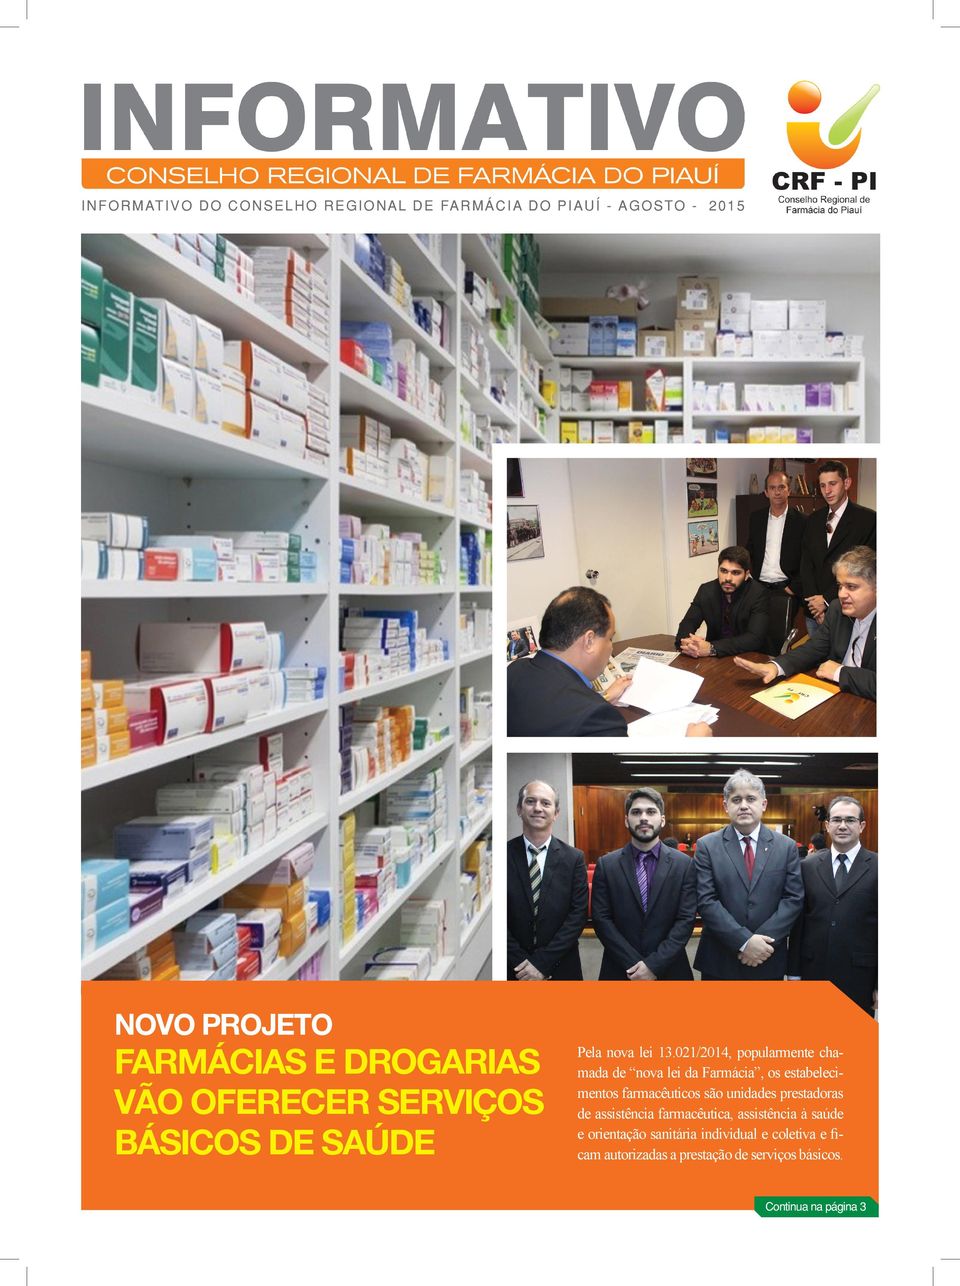 021/2014, popularmente chamada de nova lei da Farmácia, os estabelecimentos farmacêuticos são unidades prestadoras de